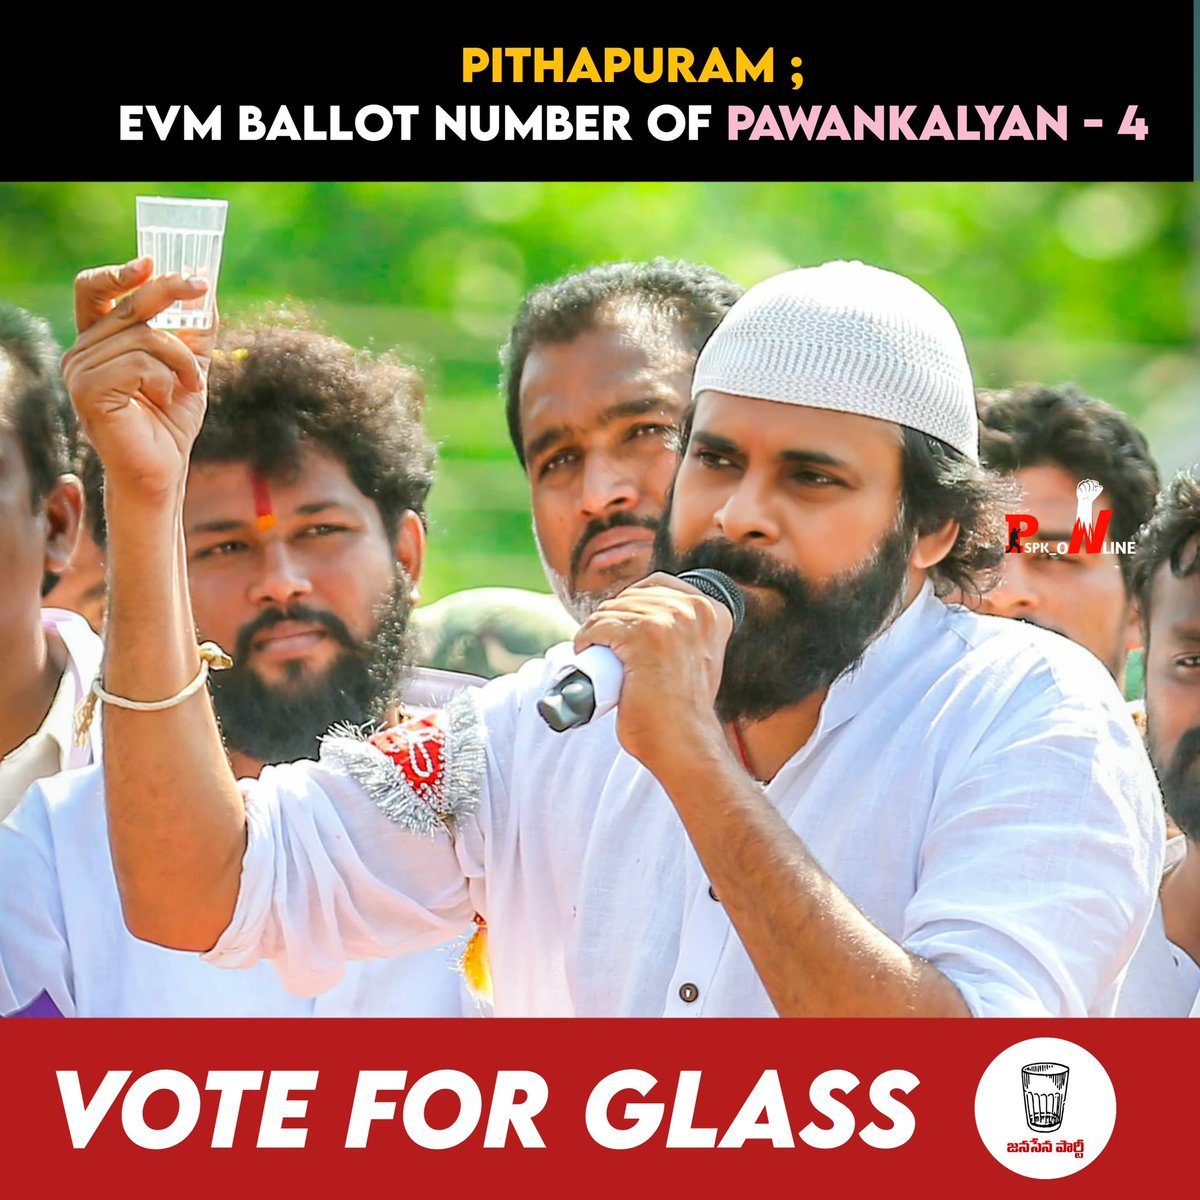 EVM BALLOT NUMBER-4 ✊🏻 #PawanKalyanWinningPithapuram #VoteForGlass #Pithapuram @PawanKalyan